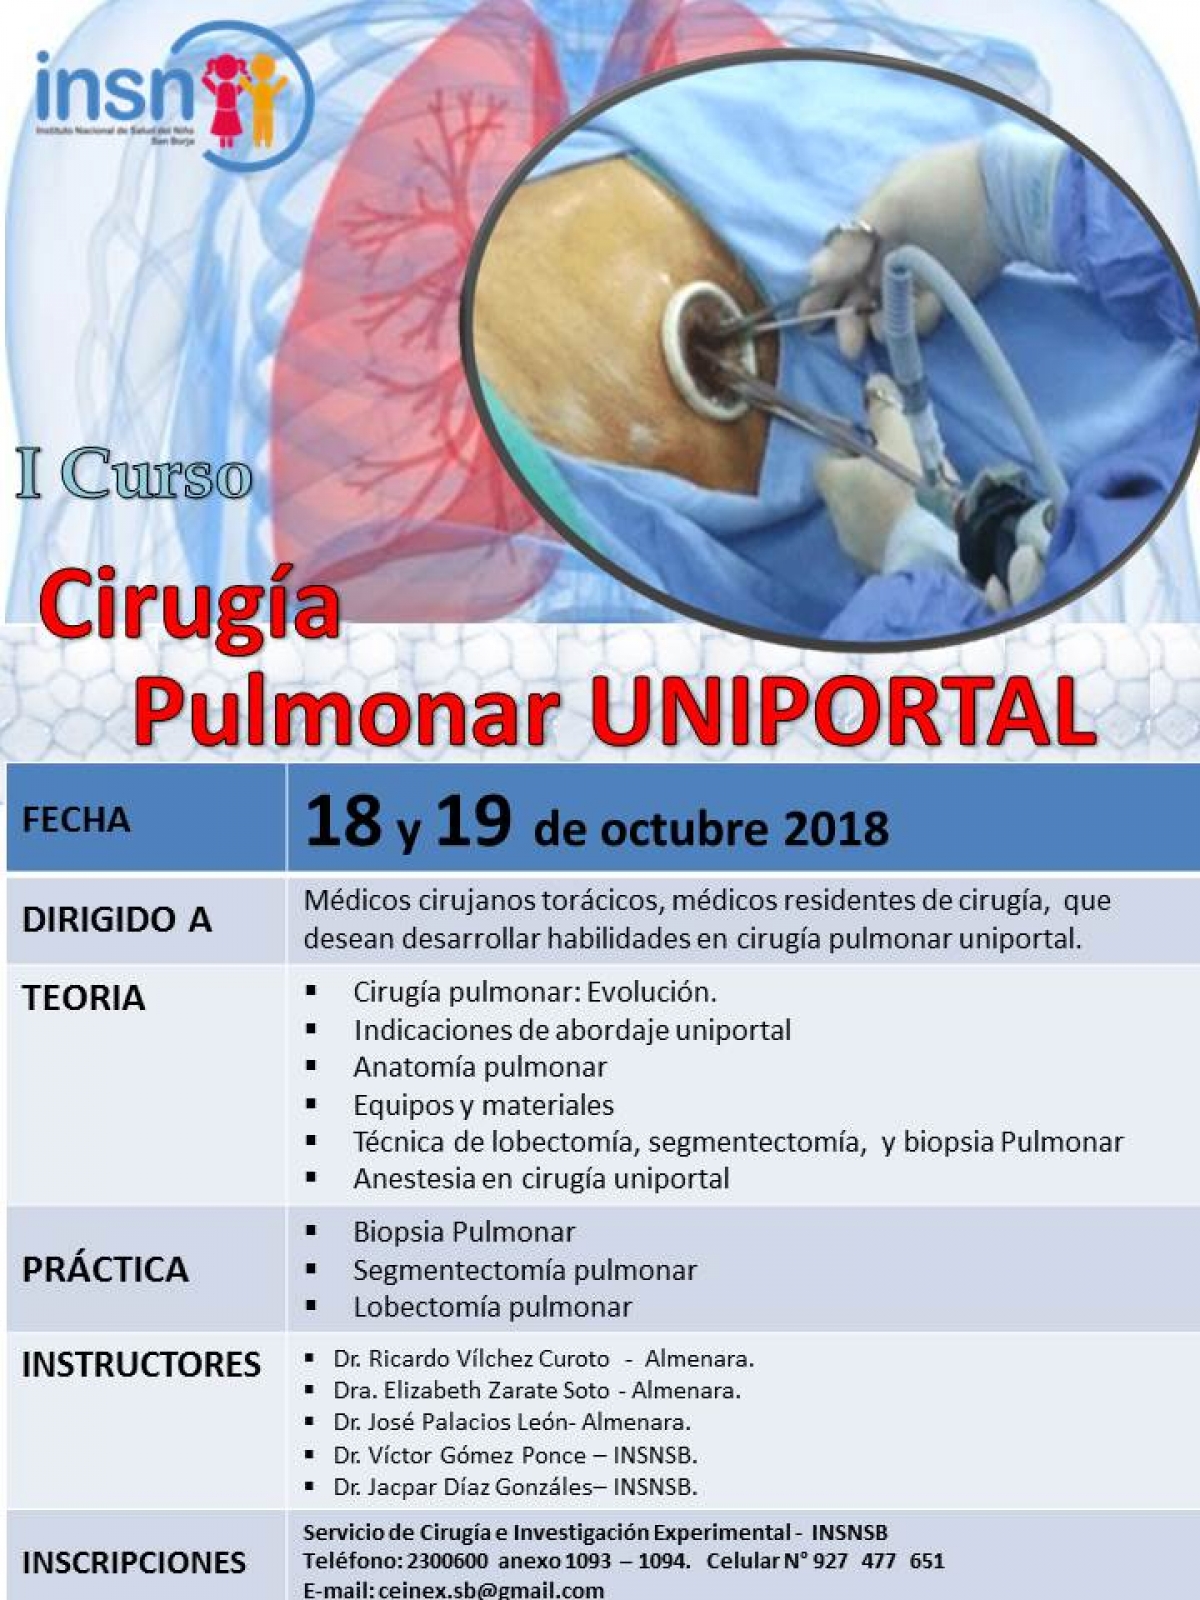 Cirugía Pulmonar UNIPORTAL